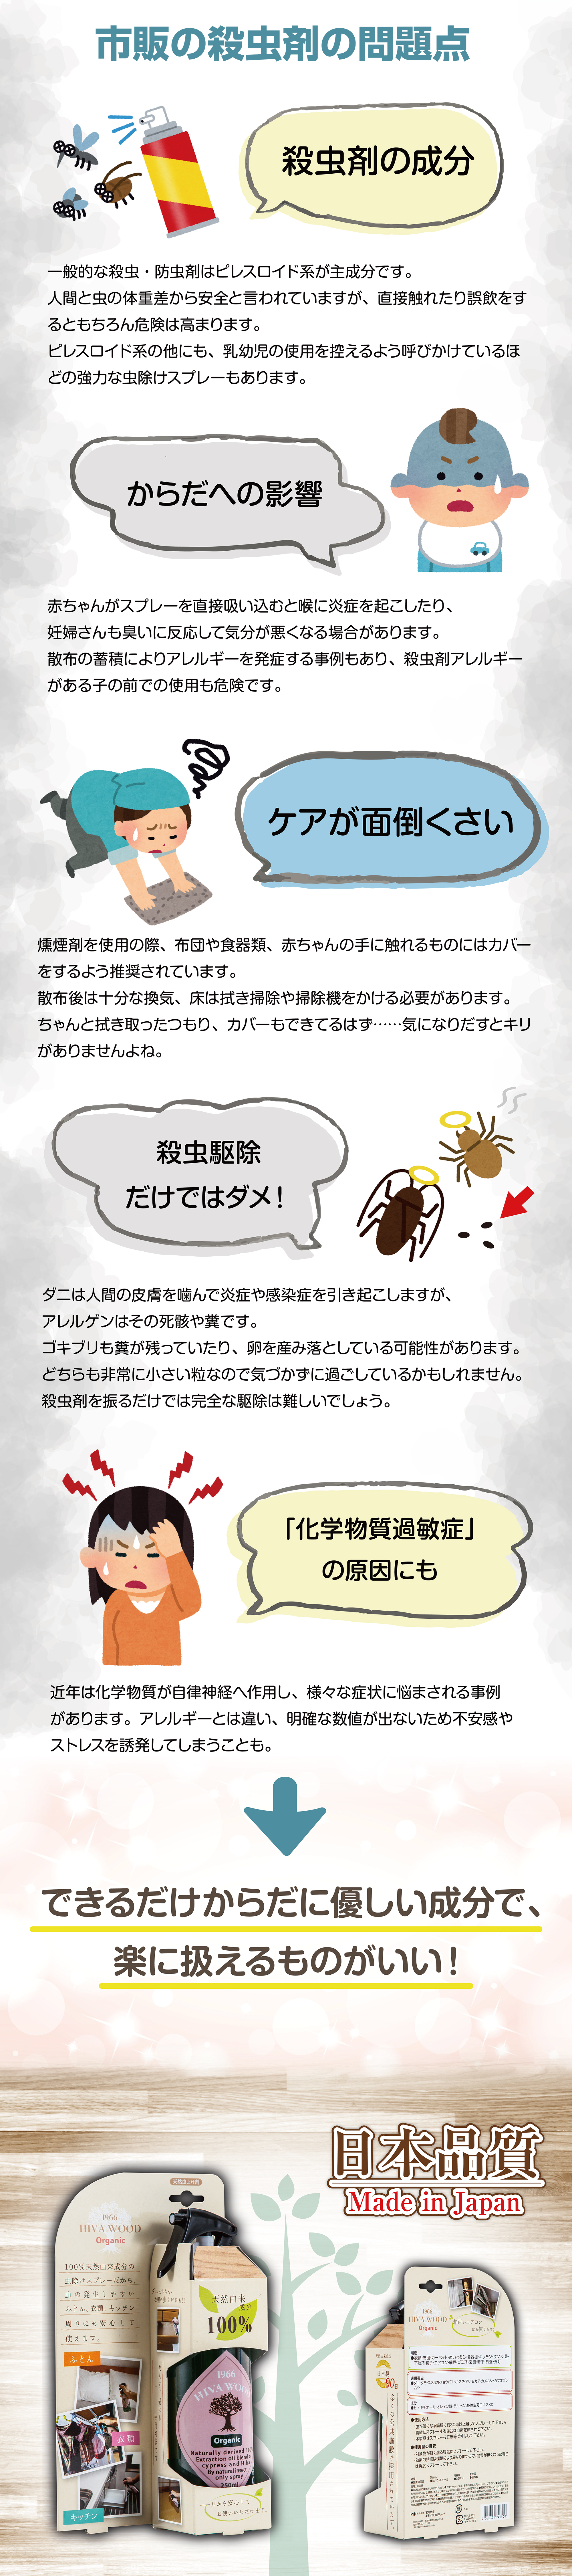 市販の殺虫剤の問題点/日本品質